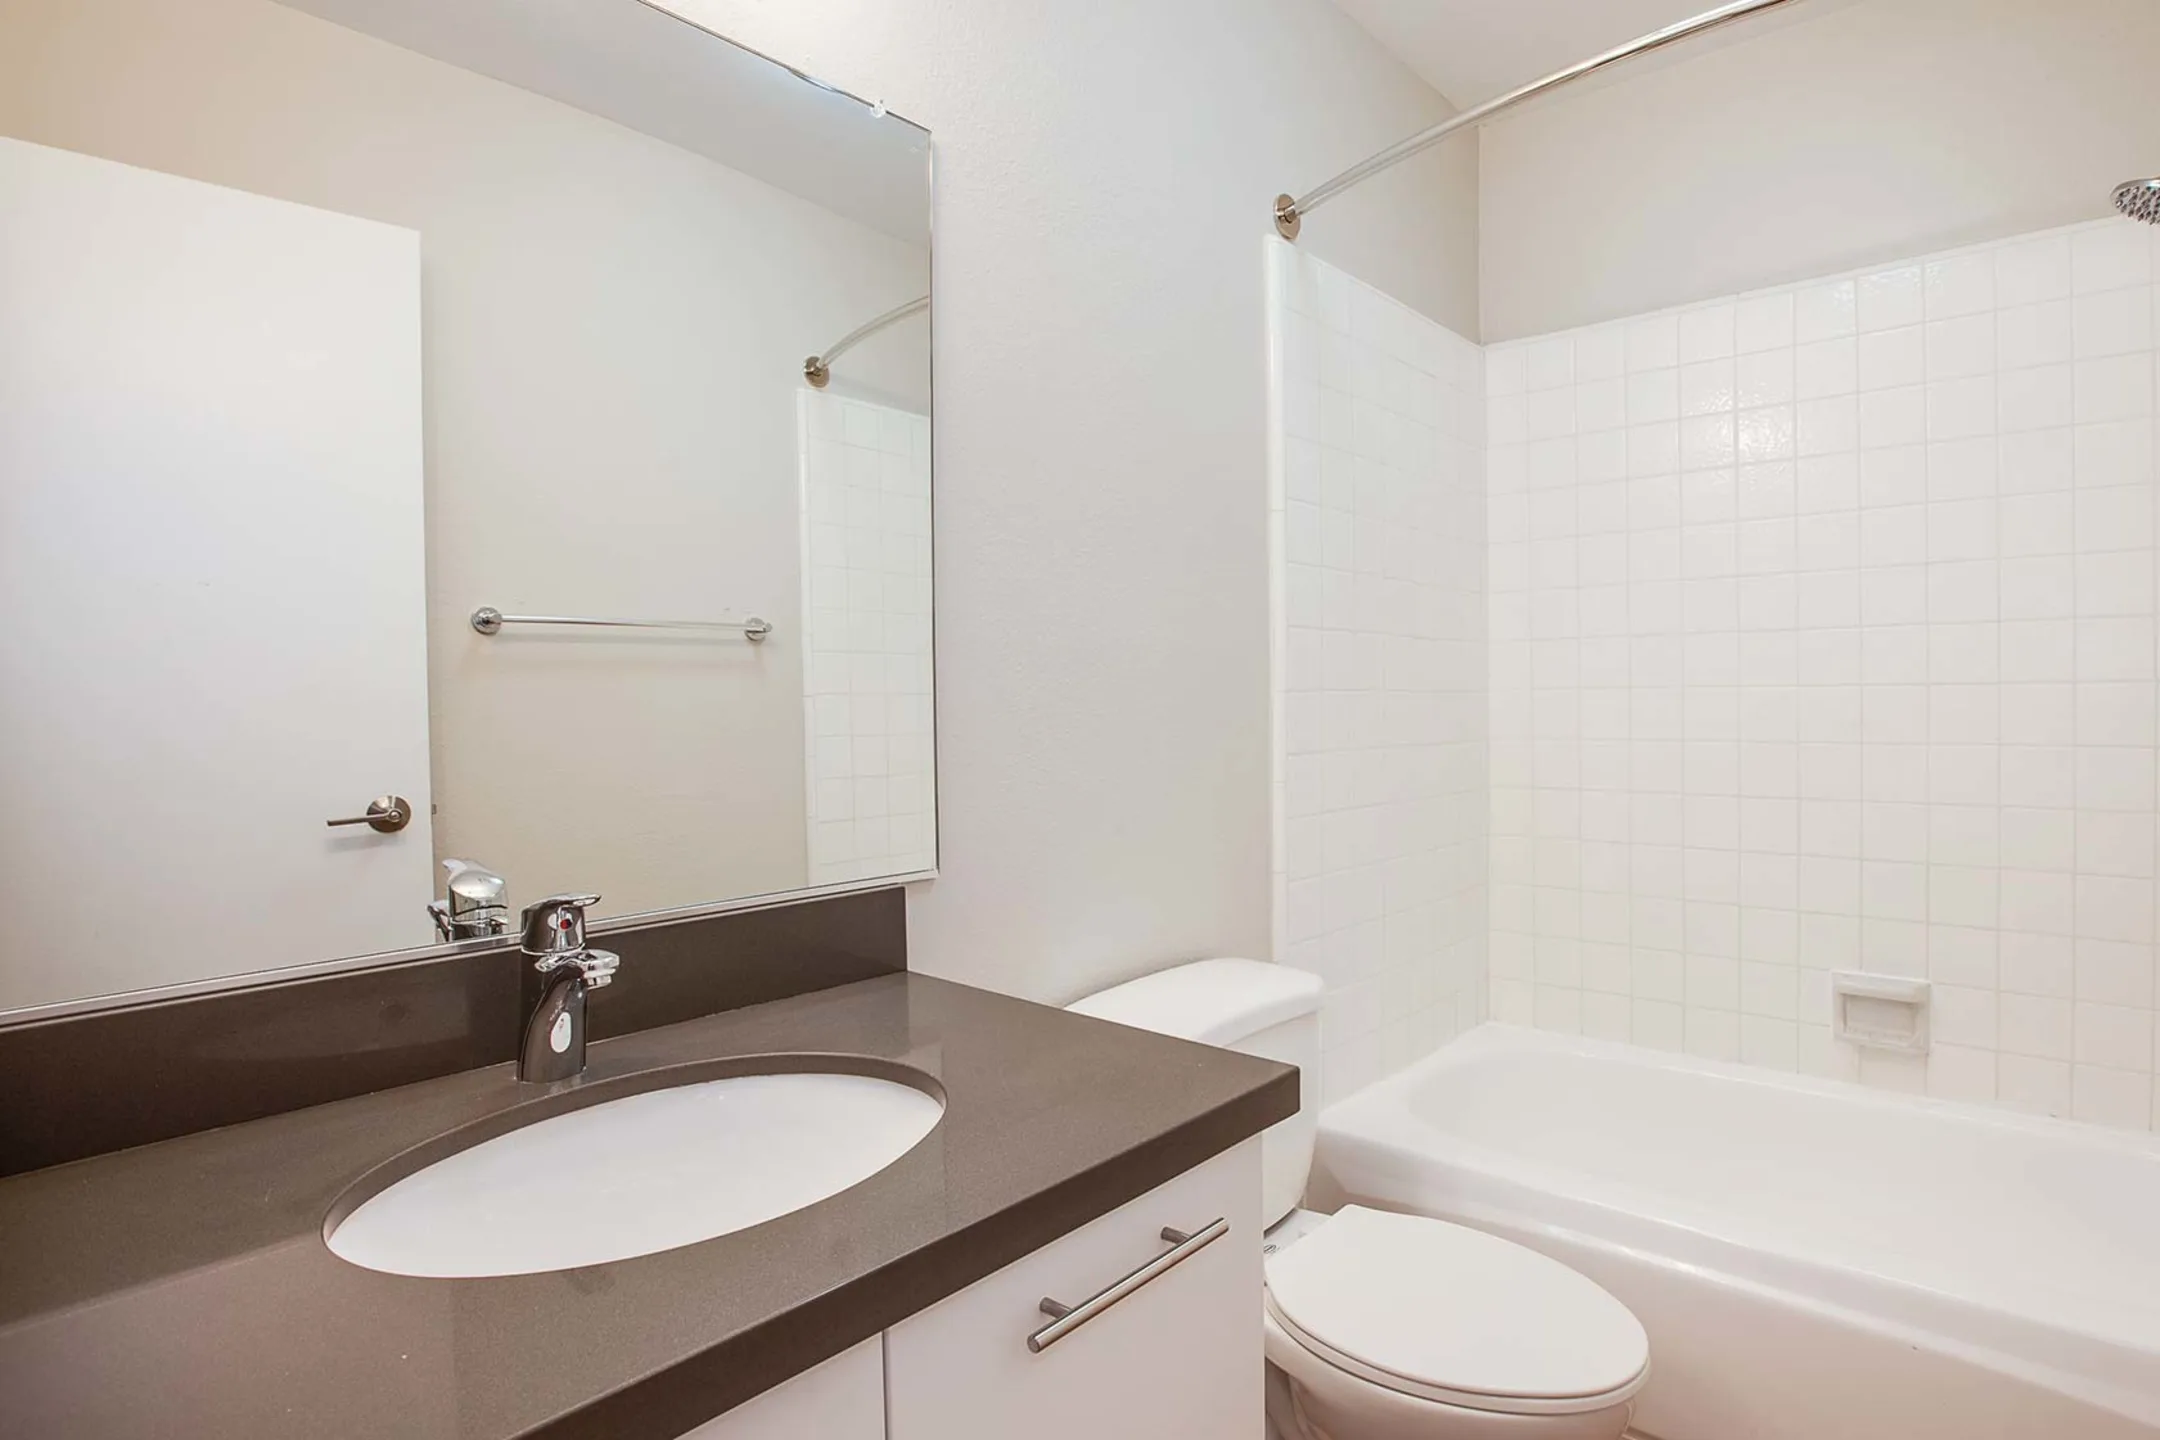 Bathroom - Villas of Pasadena Apartment Homes - Pasadena, CA